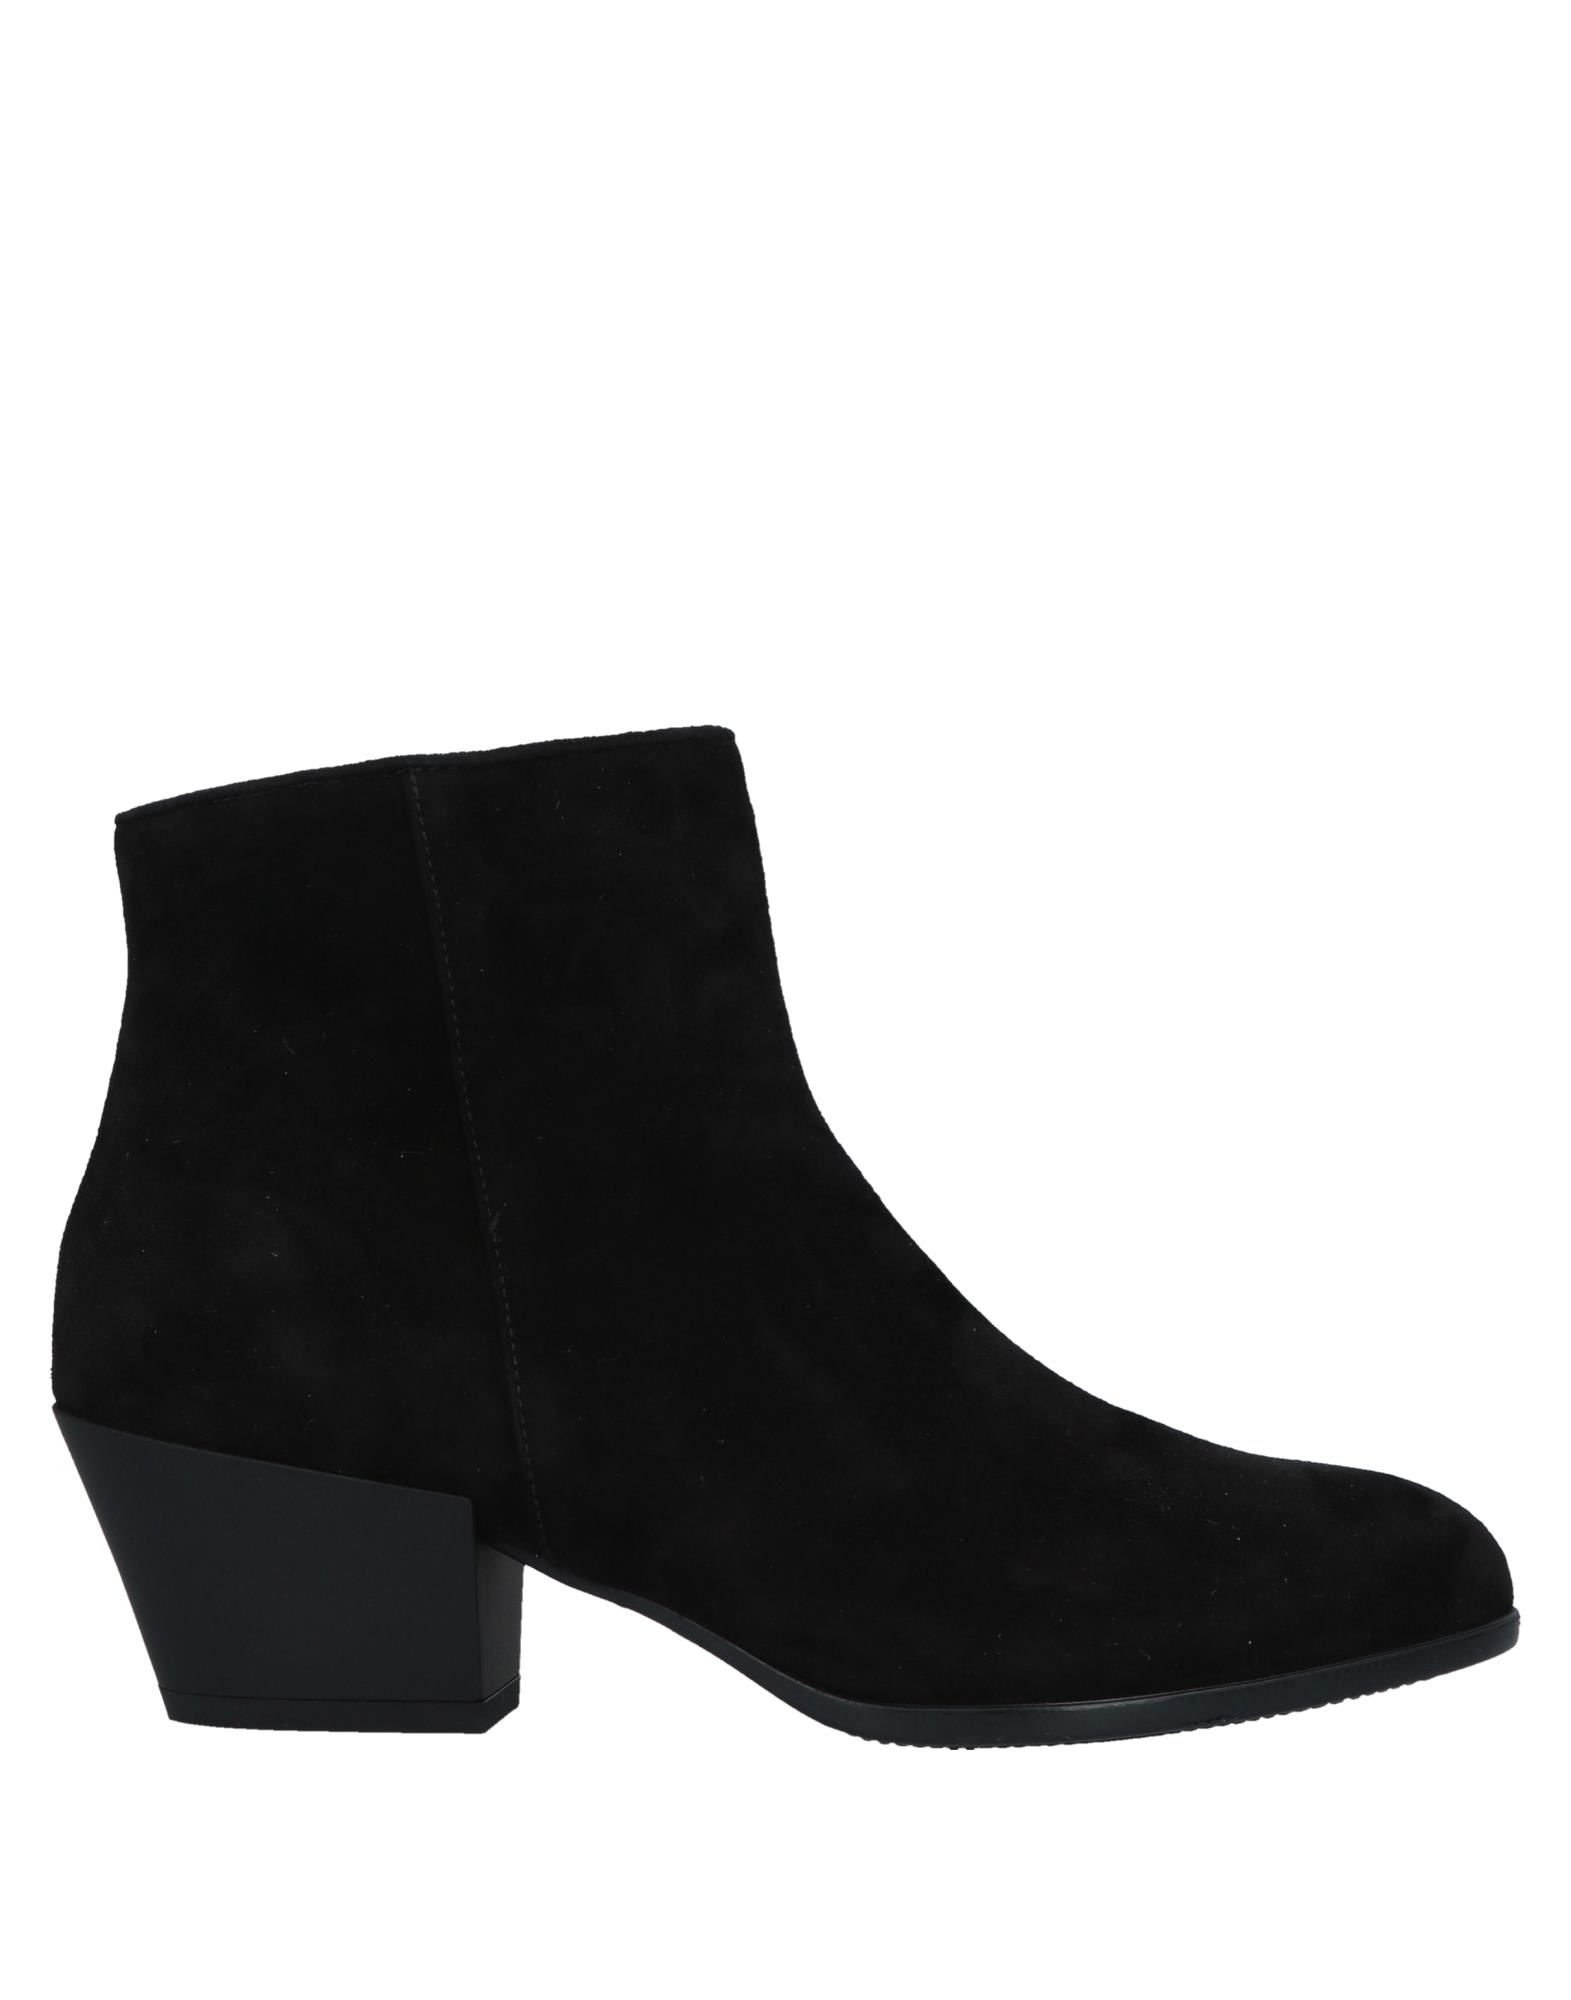 Shop Hogan Woman Ankle Boots Black Size 5 Soft Leather